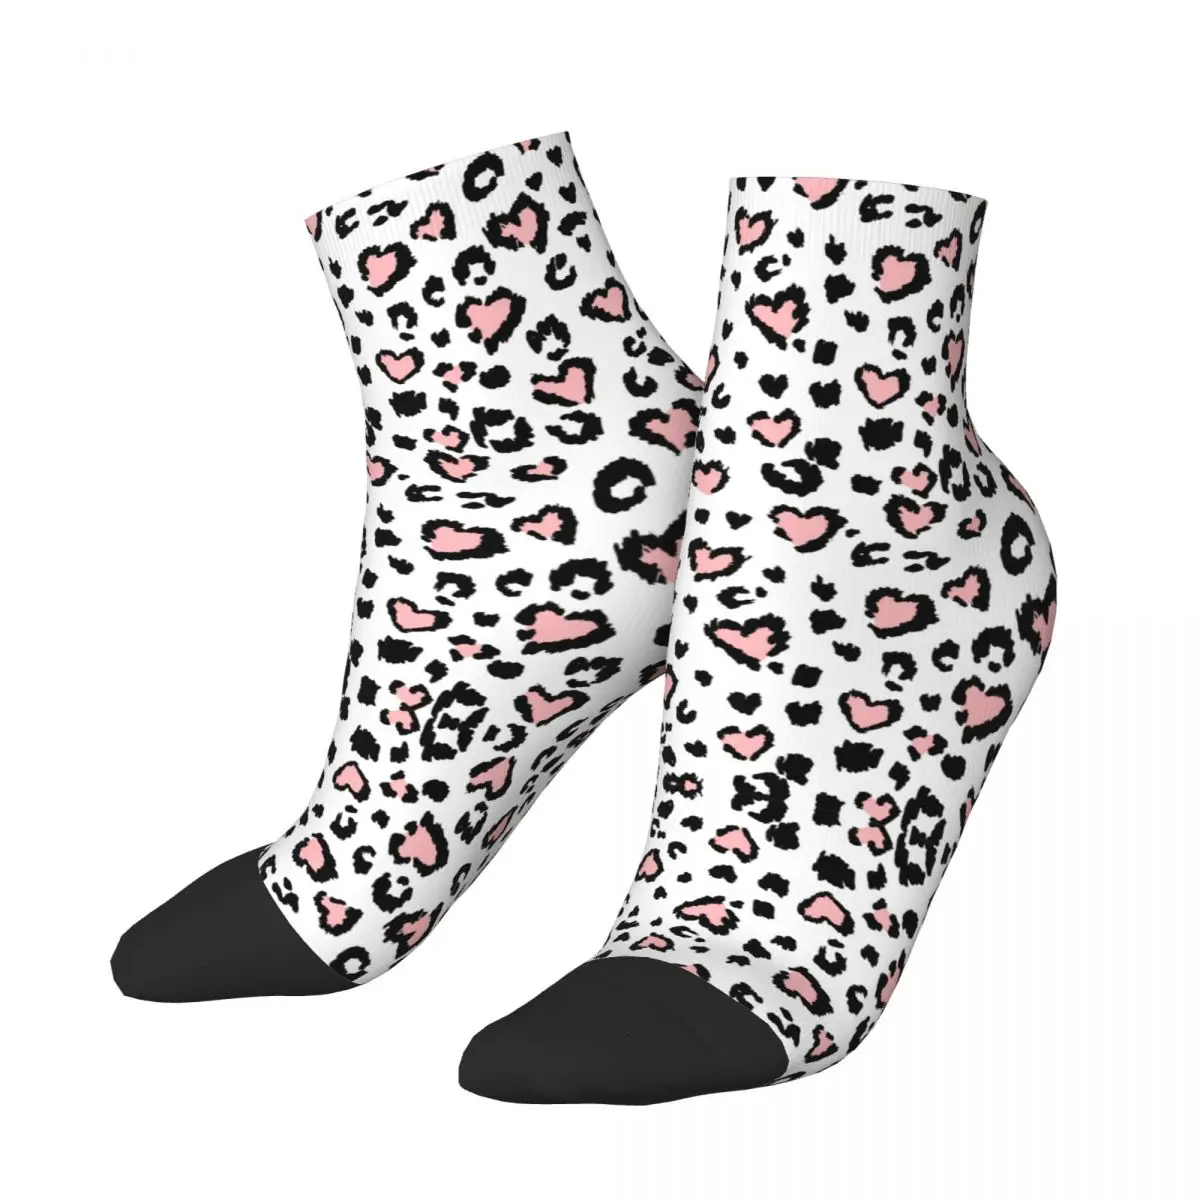 

Носки с леопардовым рисунком, короткие Уникальные повседневные носки до щиколотки для взрослых